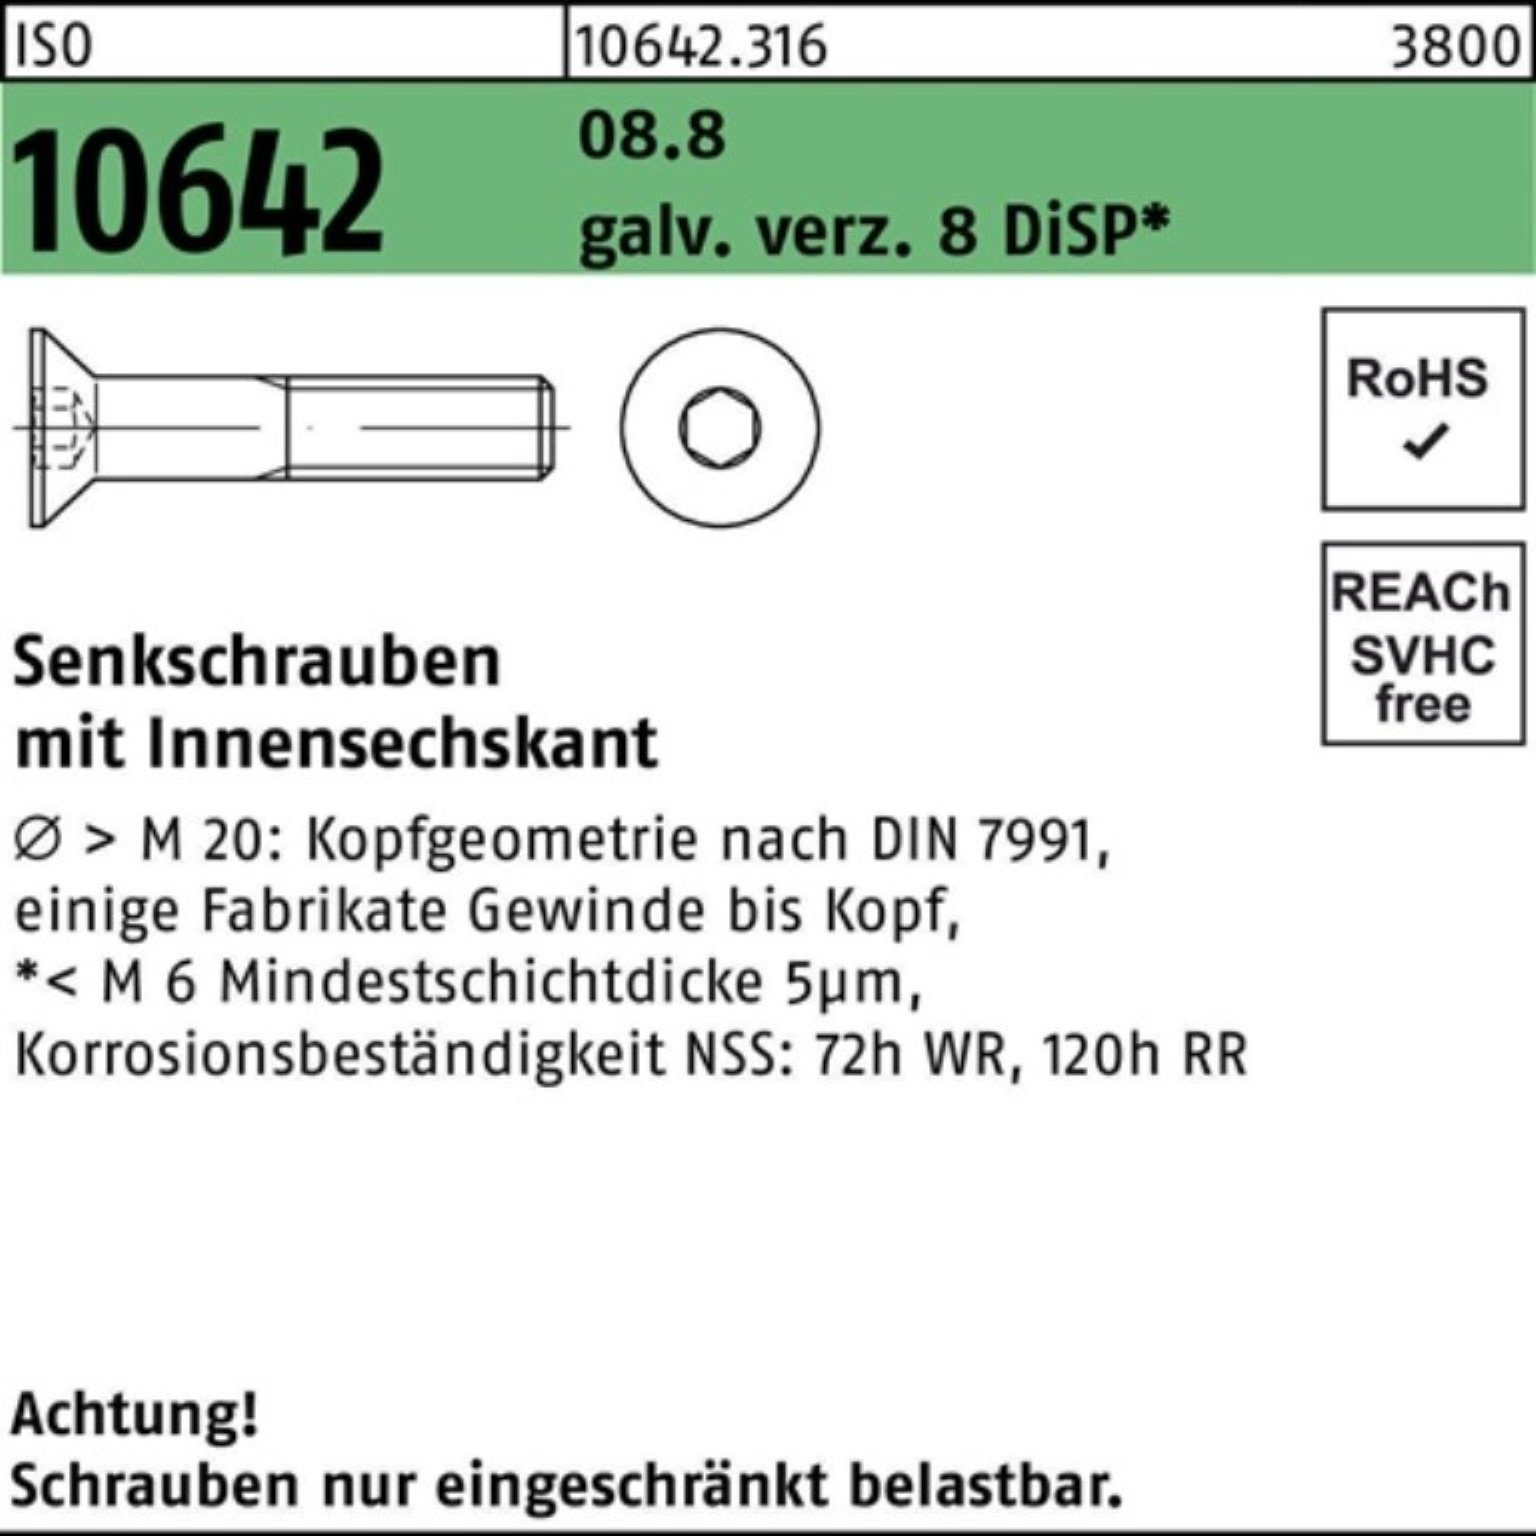 Reyher Senkschraube 200er Pack Senkschraube M8x16 Innen-6kt 10642 8.8 8 DiS ISO galv.verz